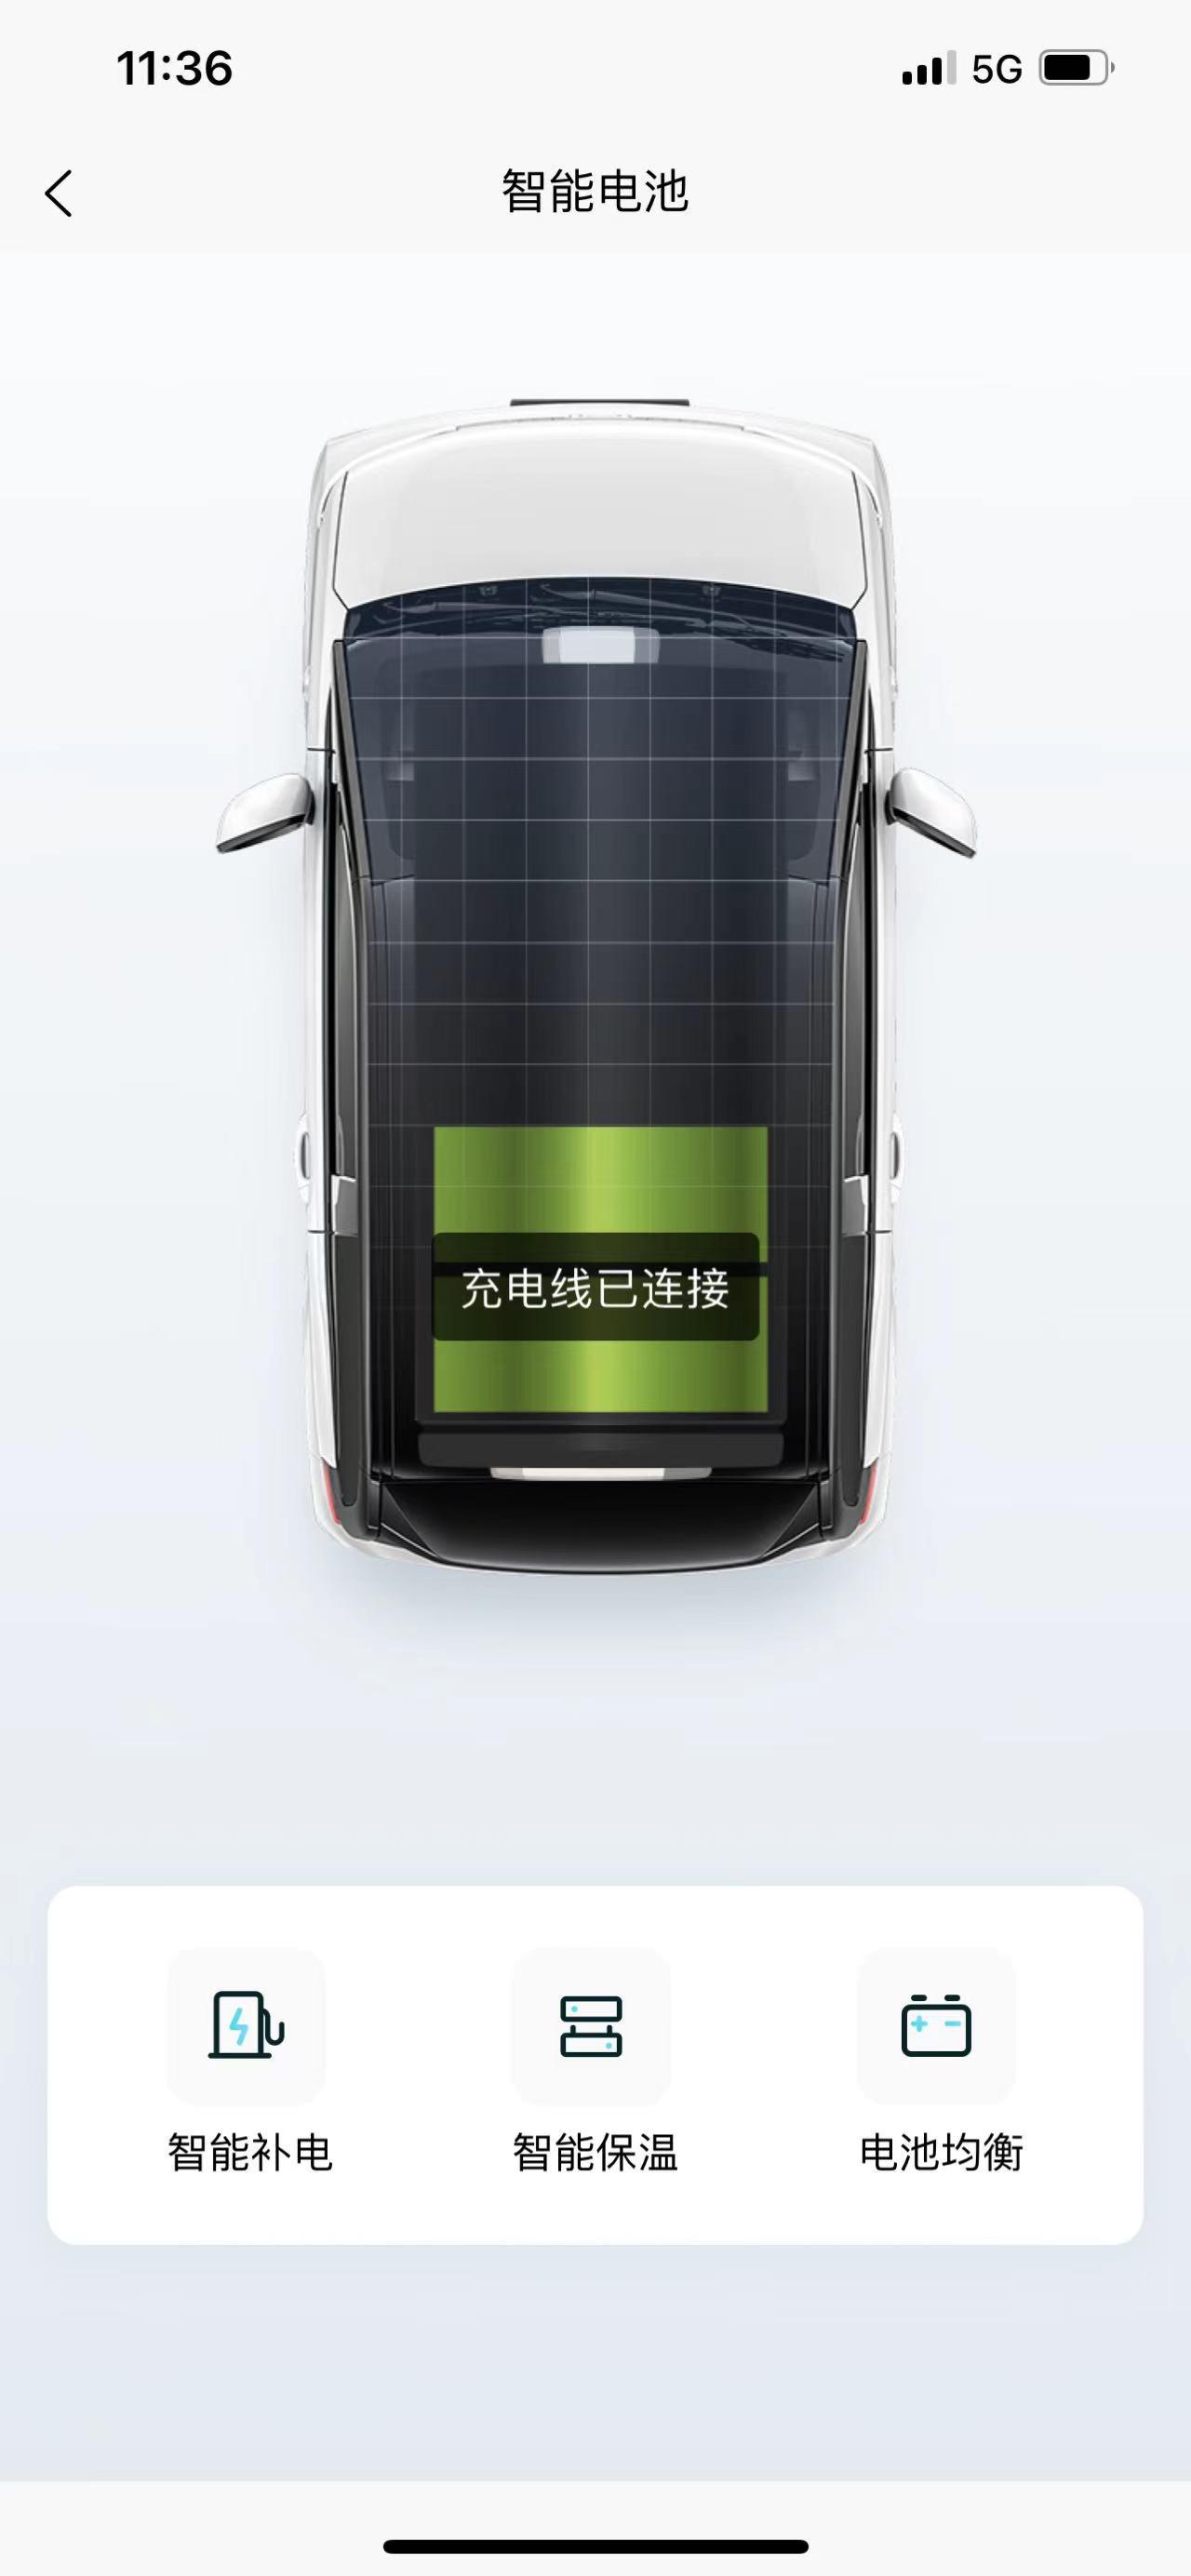 奇瑞新能源QQ冰淇淋 车子小电池一直显示只有两个格，智能补电后也显示只要两格，车子启动时偶尔会提示偶尔跳一次给12v小电